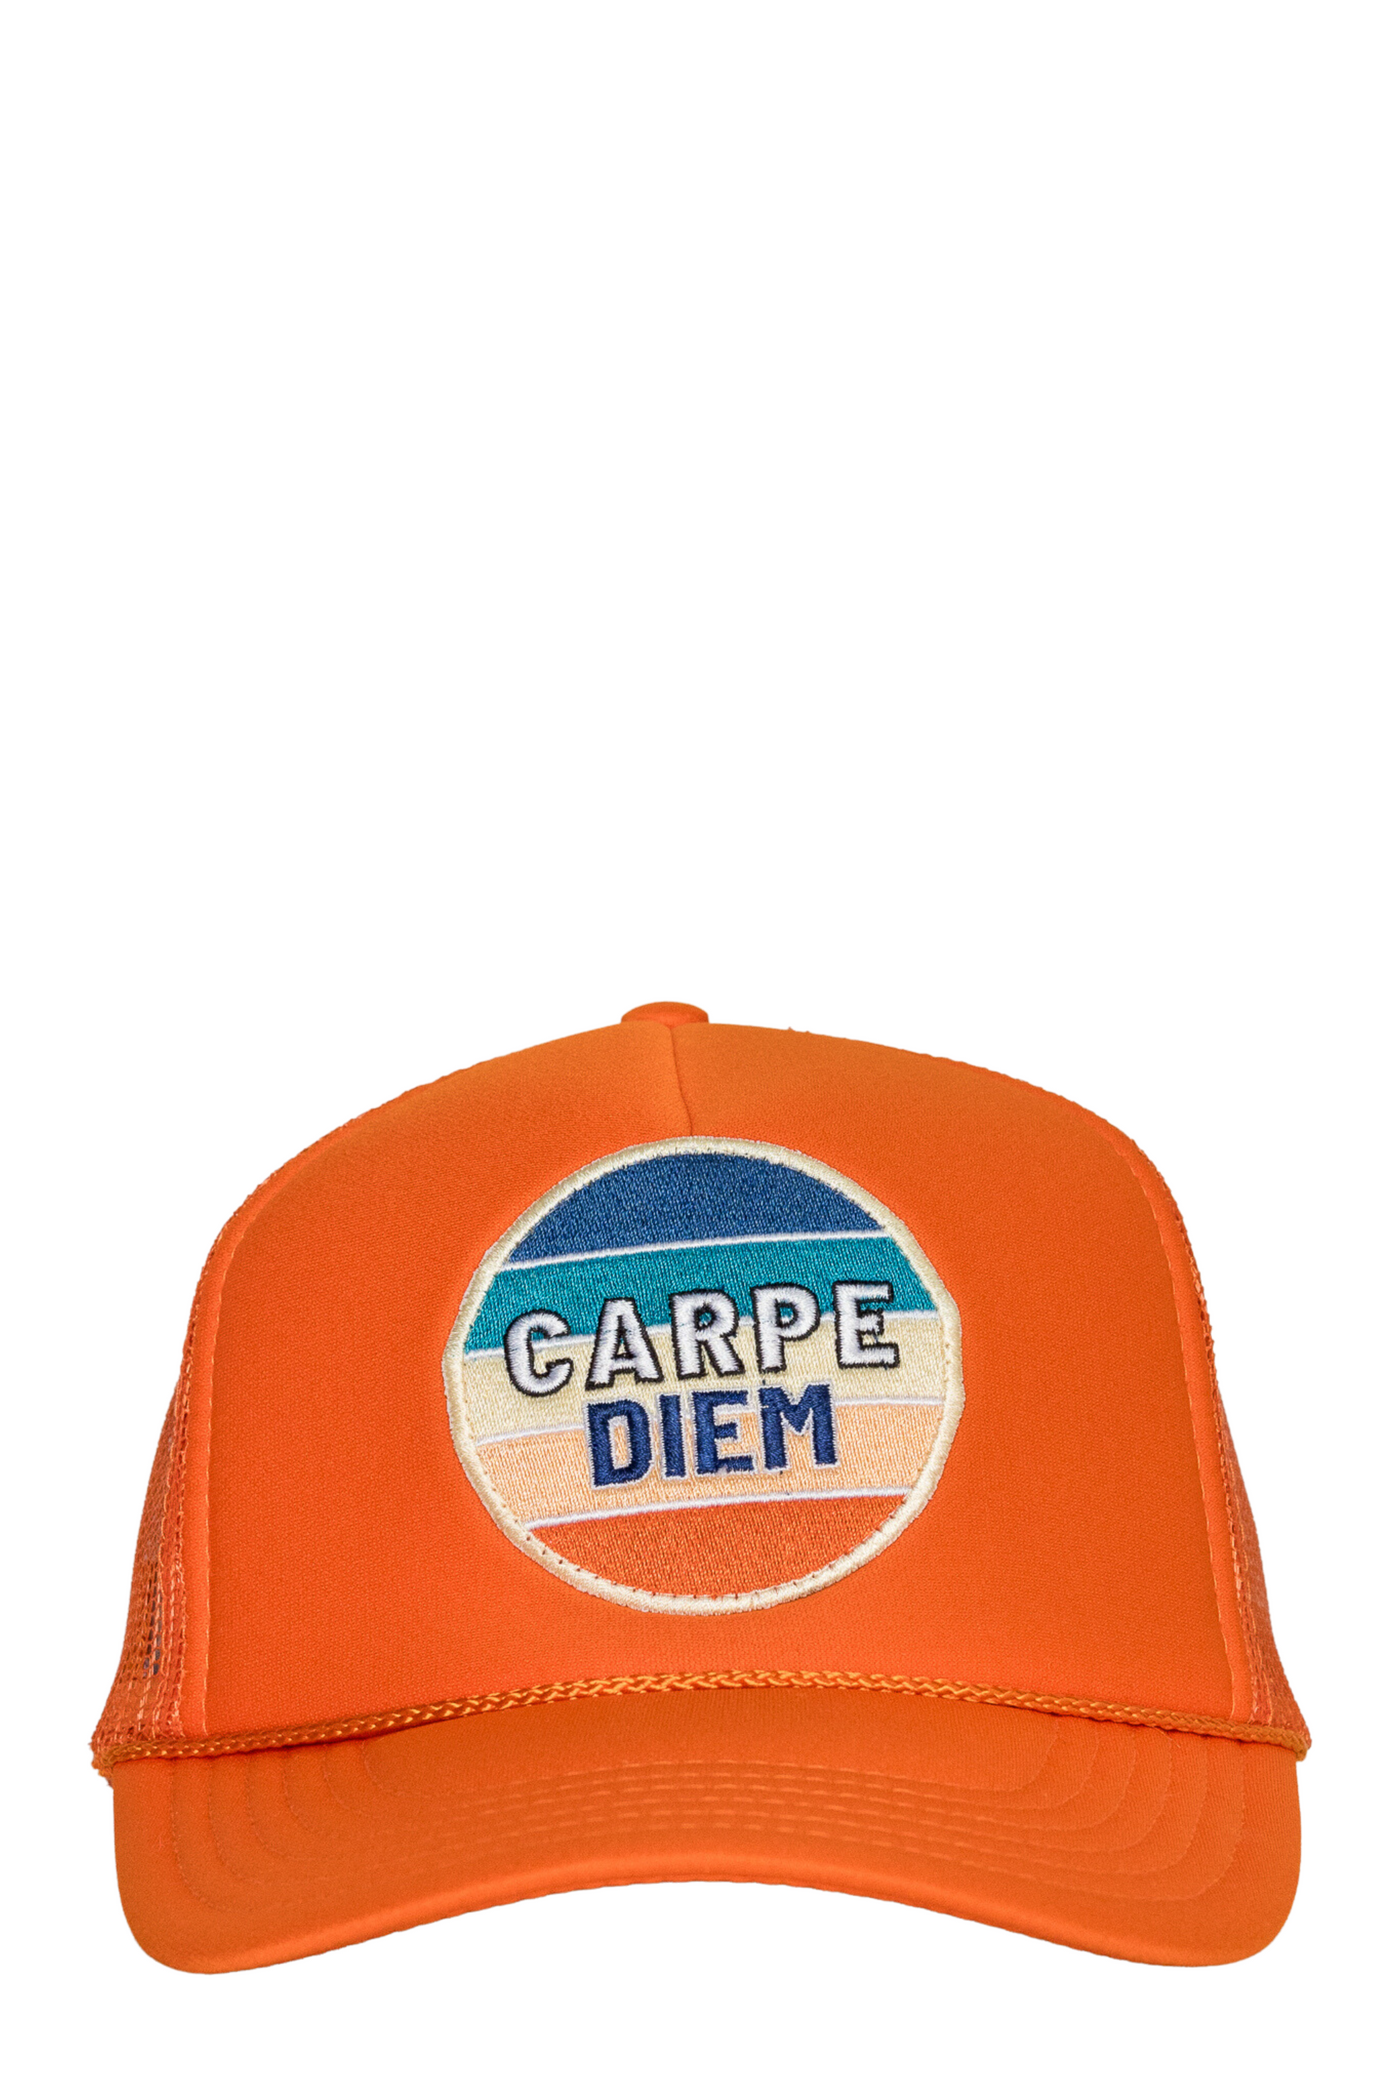 Carpe Diem Hat